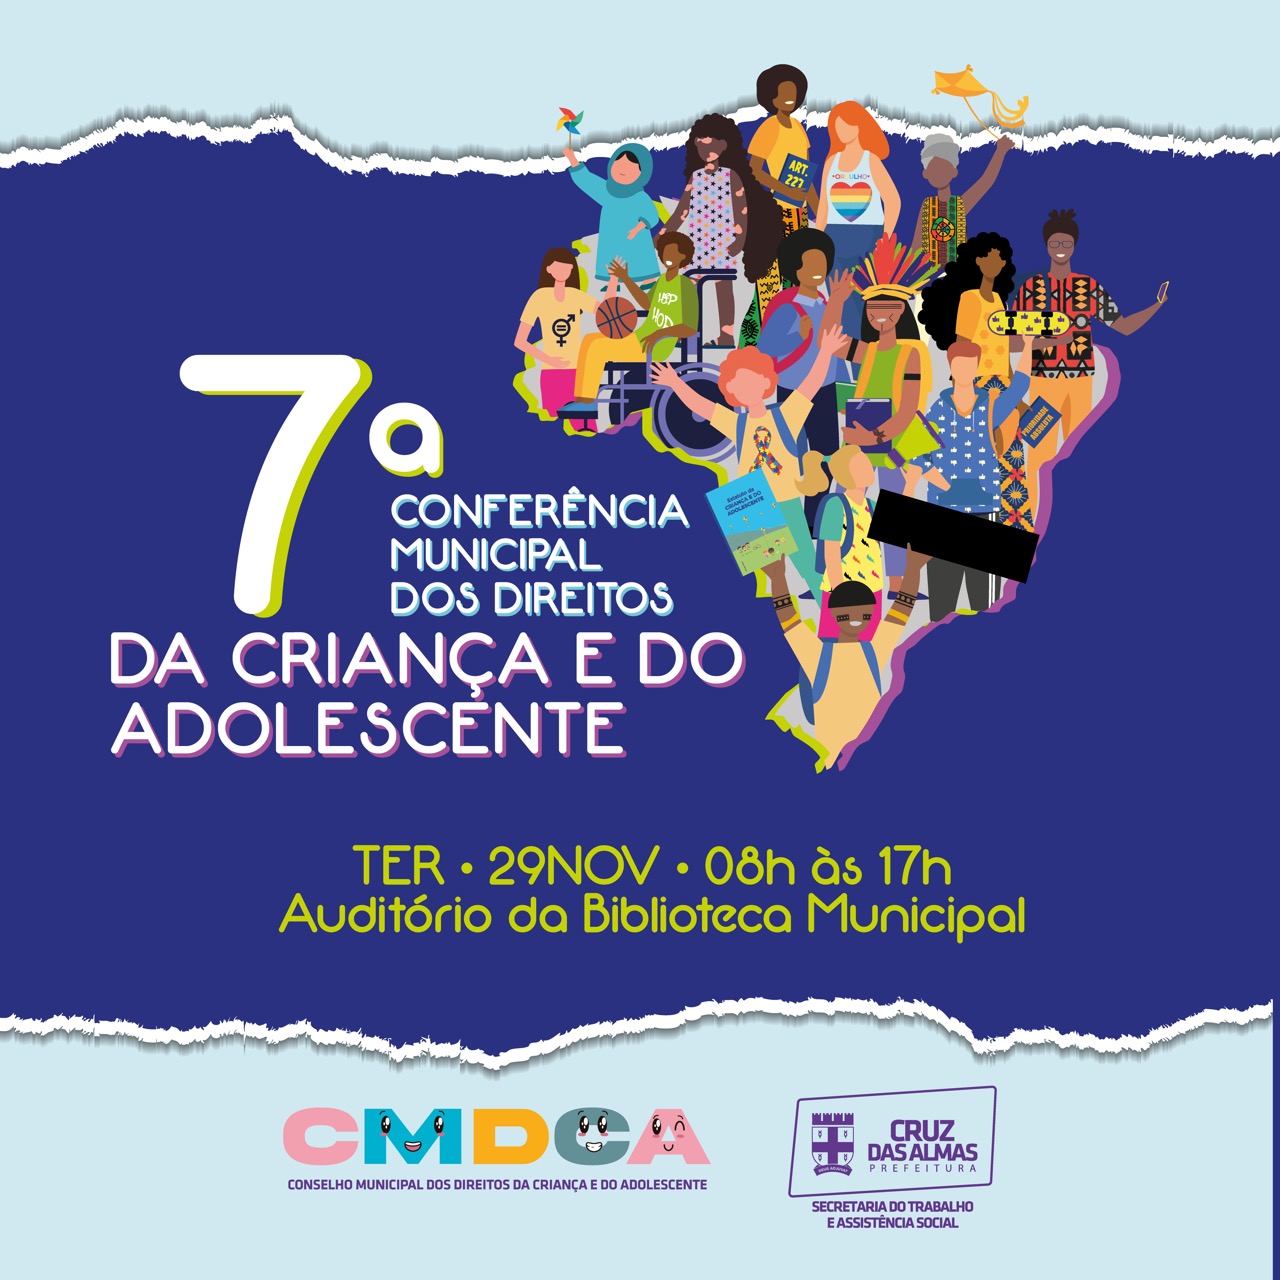 7° Conferência Municipal dos Direitos da Criança e do Adolescente acontece nesta terça (29)